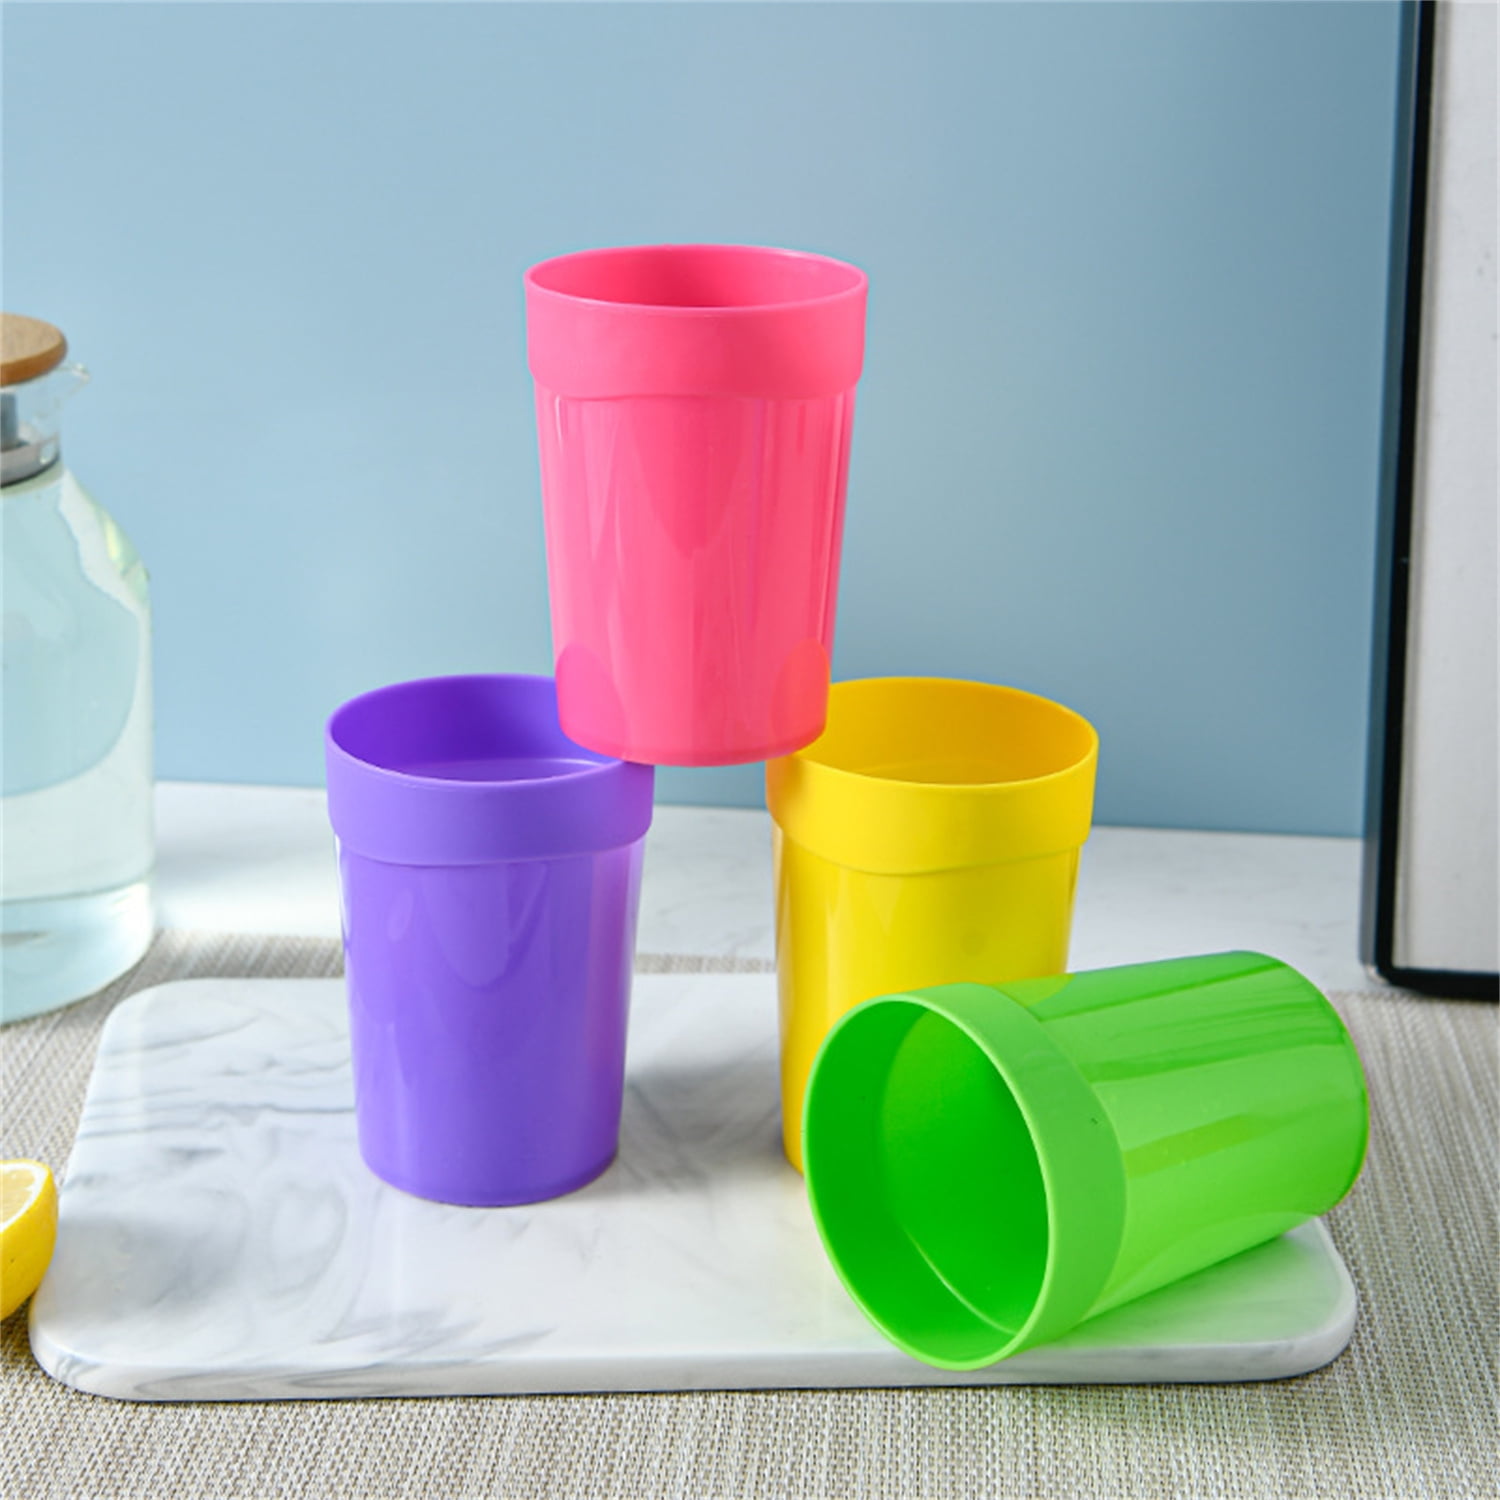 Plastic Cup - Montessori Services